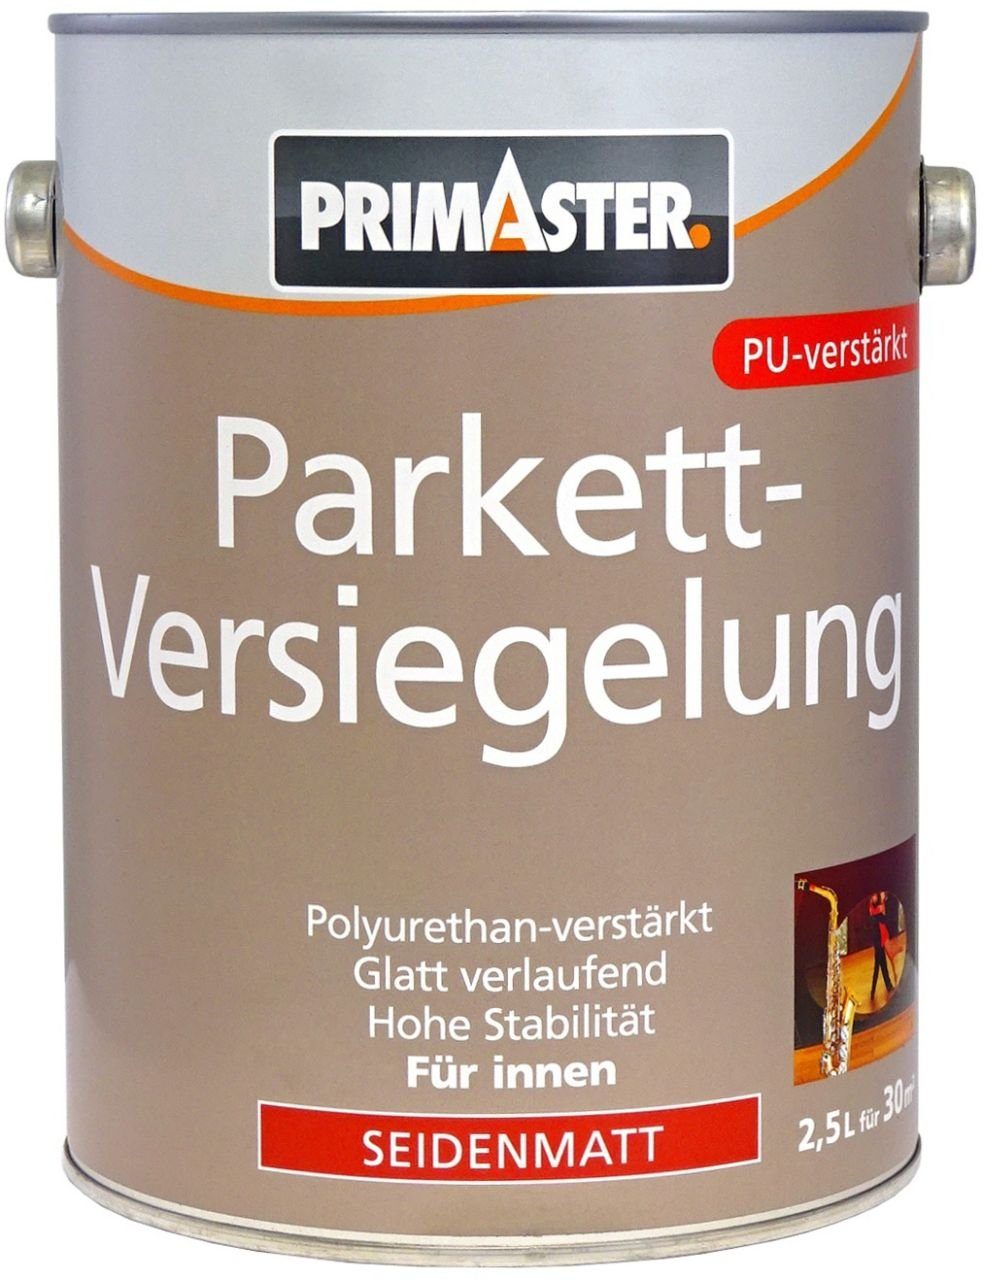 Klarlack Primaster L Primaster Parkettversiegelung seidenmatt 2,5